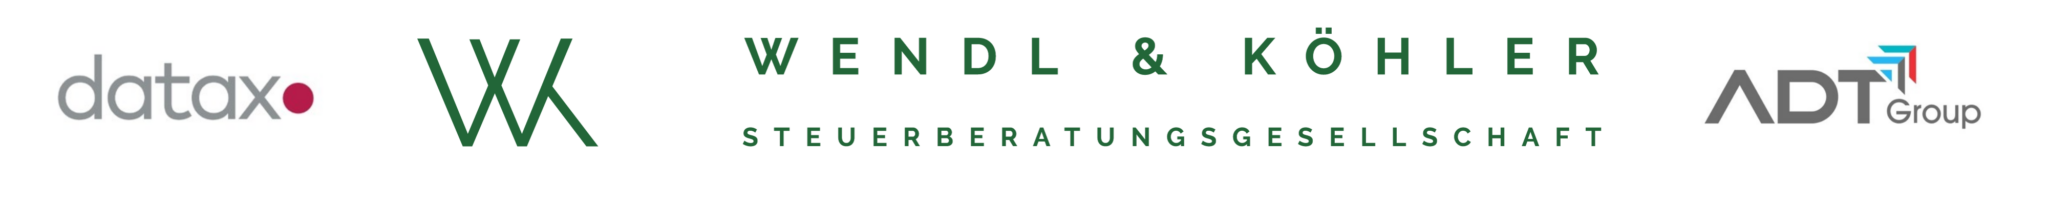 Banner der Partnerunternehmen Datax, Wendl & Köhler, ADT Group